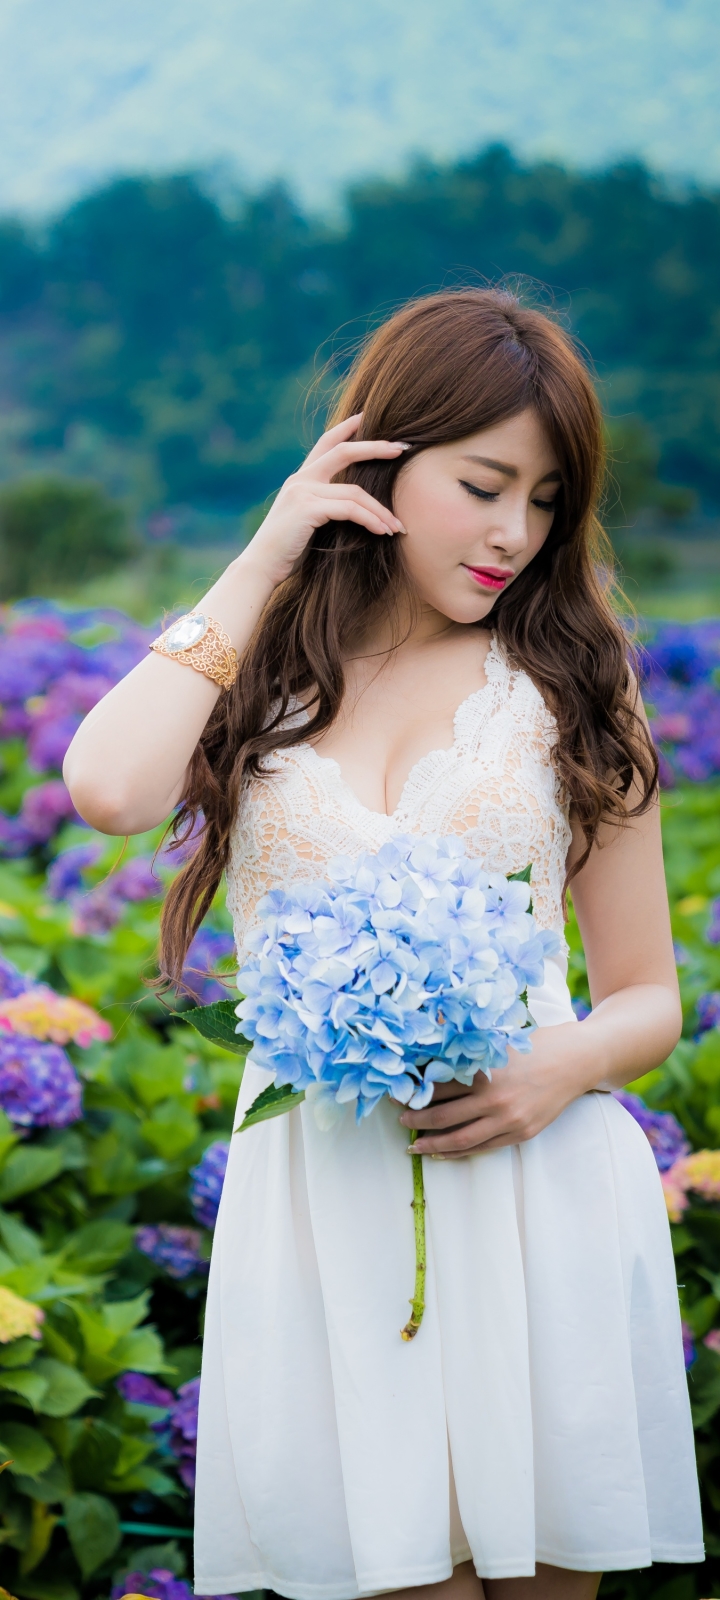 Download mobile wallpaper Flower, Mood, Hydrangea, Brunette, Model, Women, Asian, Lipstick, White Dress, Blue Flower for free.